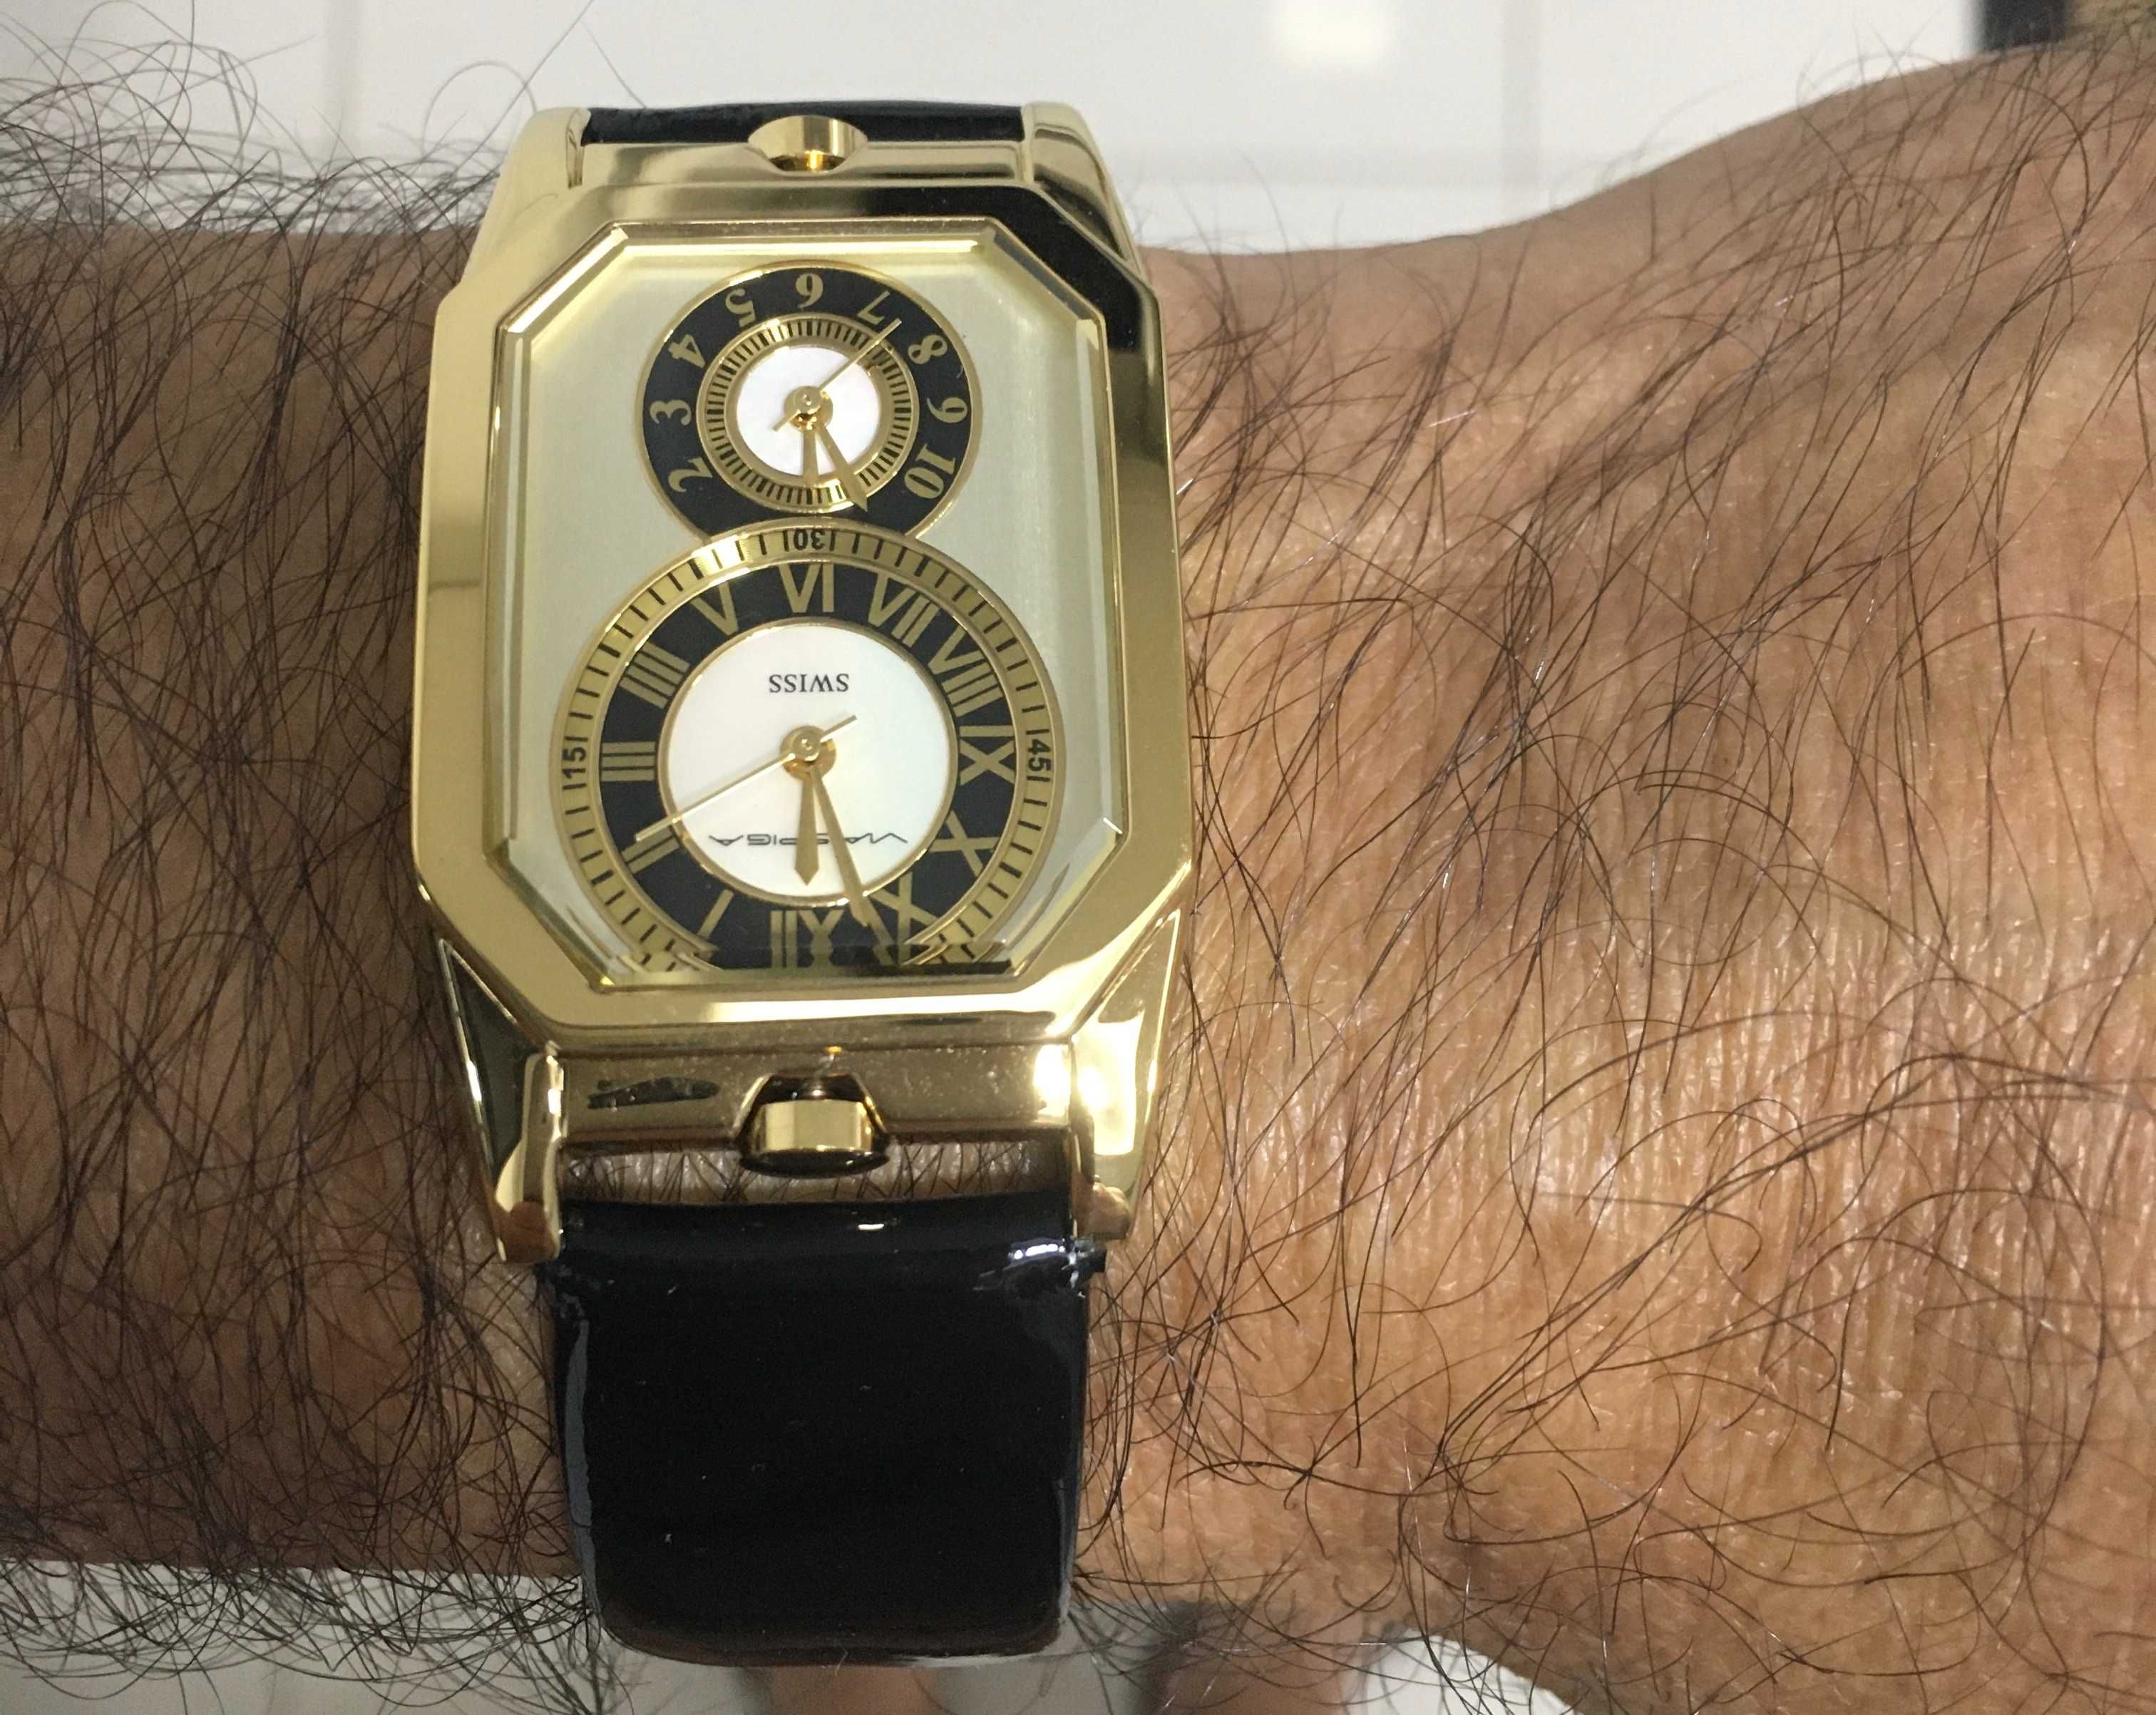 Relógio Via Spiga plaque ouro bracelete de verniz novo